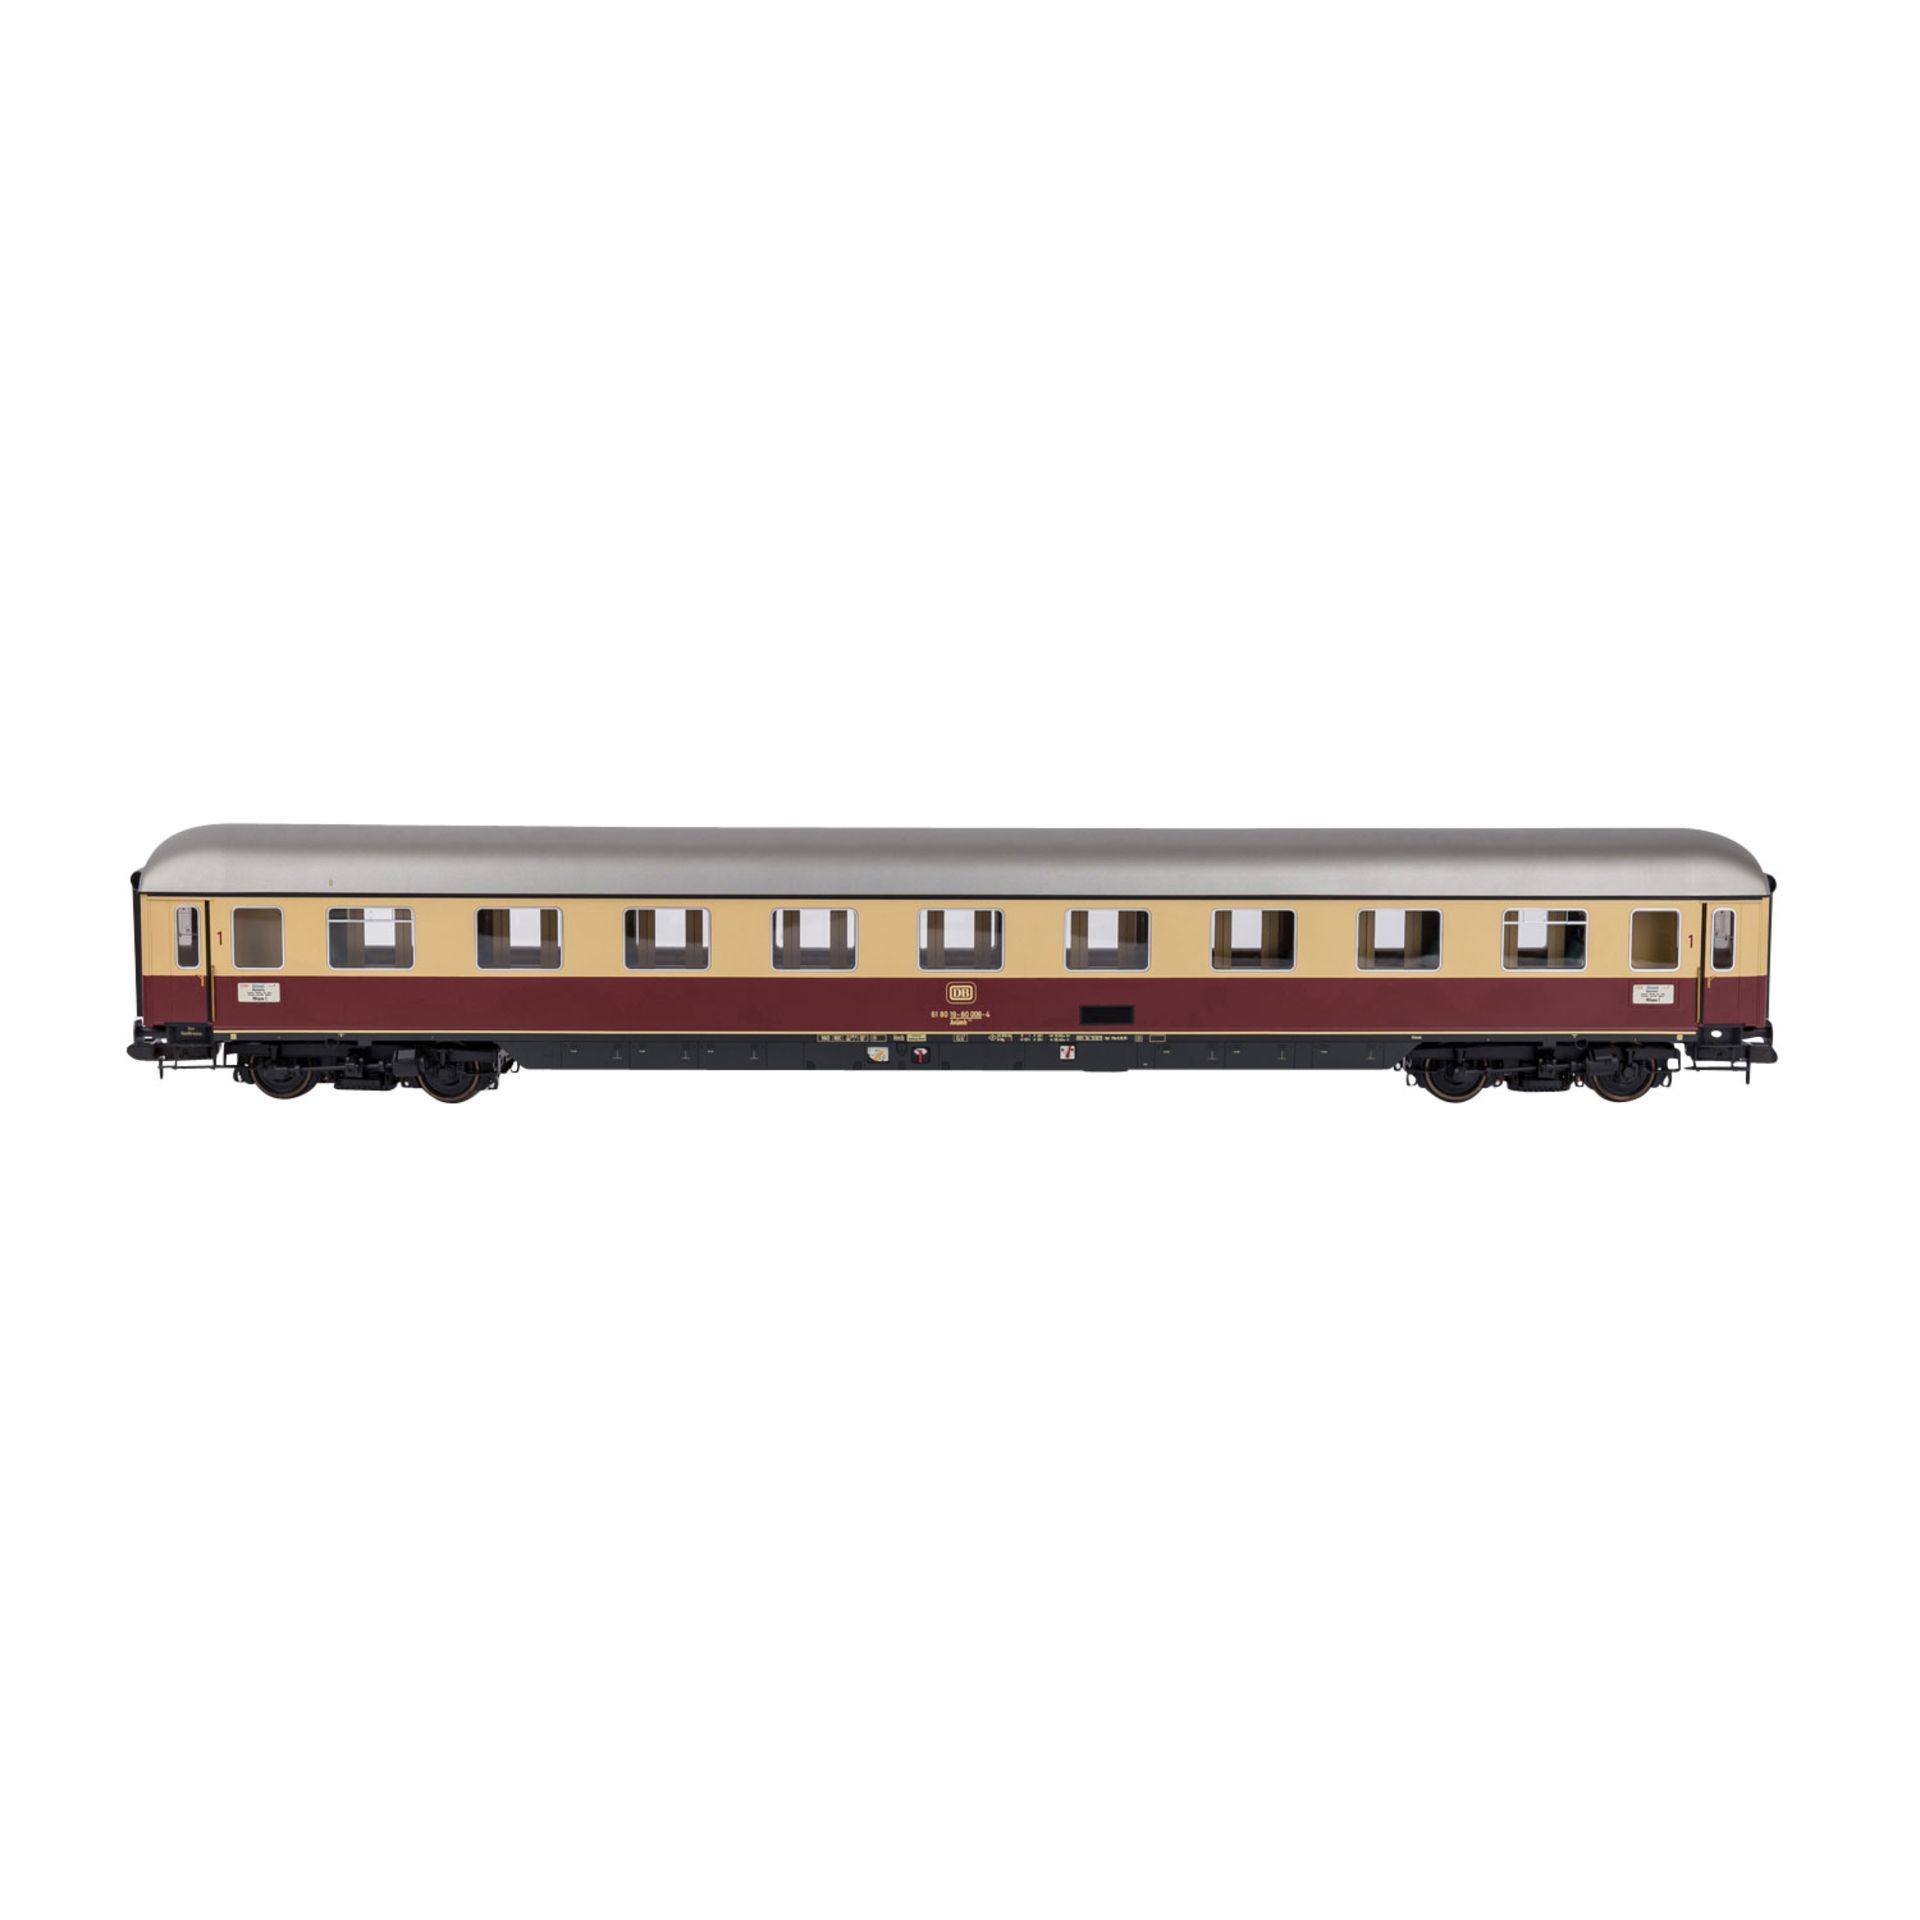 MÄRKLIN Schnellzug-Wagenset "Rheingold 2" 58039, Spur 1.Rot-/beigefarben, bestehend aus 3 - Image 4 of 7